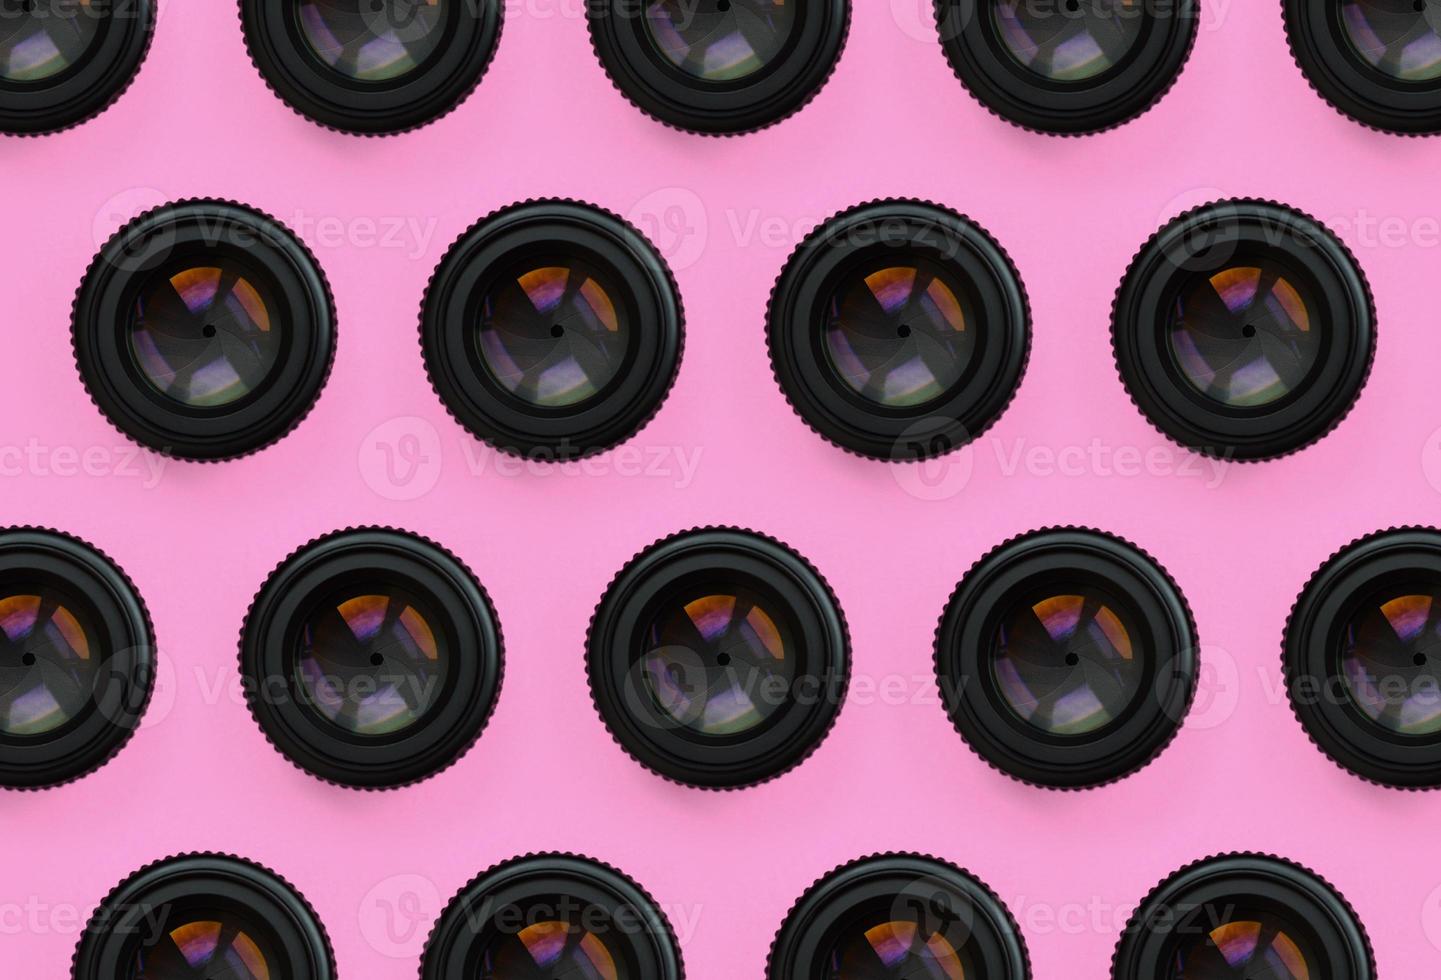 quelques objectifs d'appareil photo avec une ouverture fermée se trouvent sur un fond de texture de papier de couleur rose pastel de mode dans un concept minimal. motif tendance abstrait